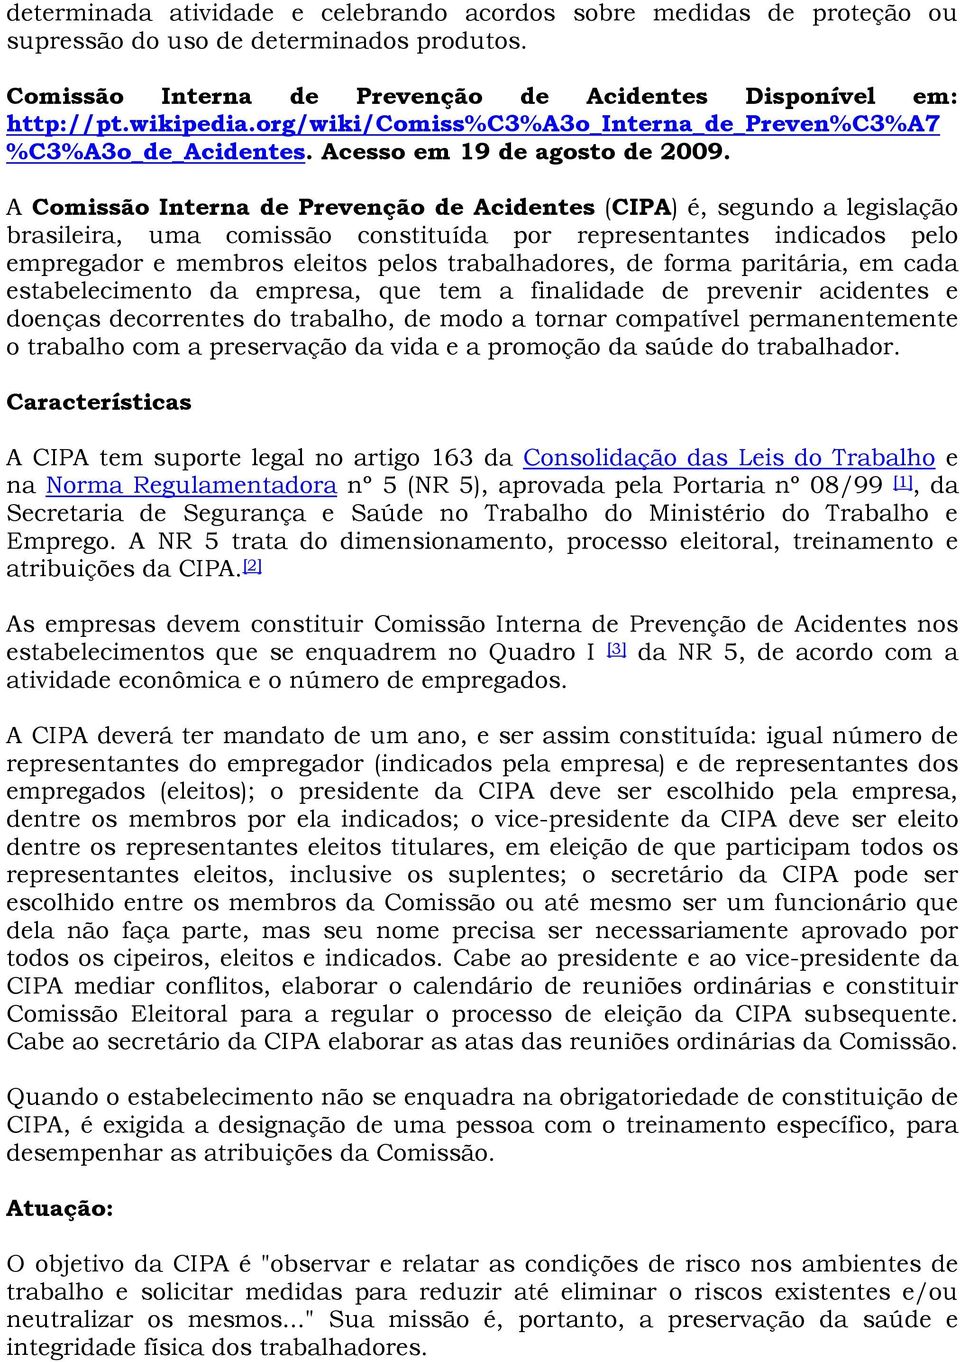 A Comissão Interna de Prevenção de Acidentes (CIPA) é, segundo a legislação brasileira, uma comissão constituída por representantes indicados pelo empregador e membros eleitos pelos trabalhadores, de